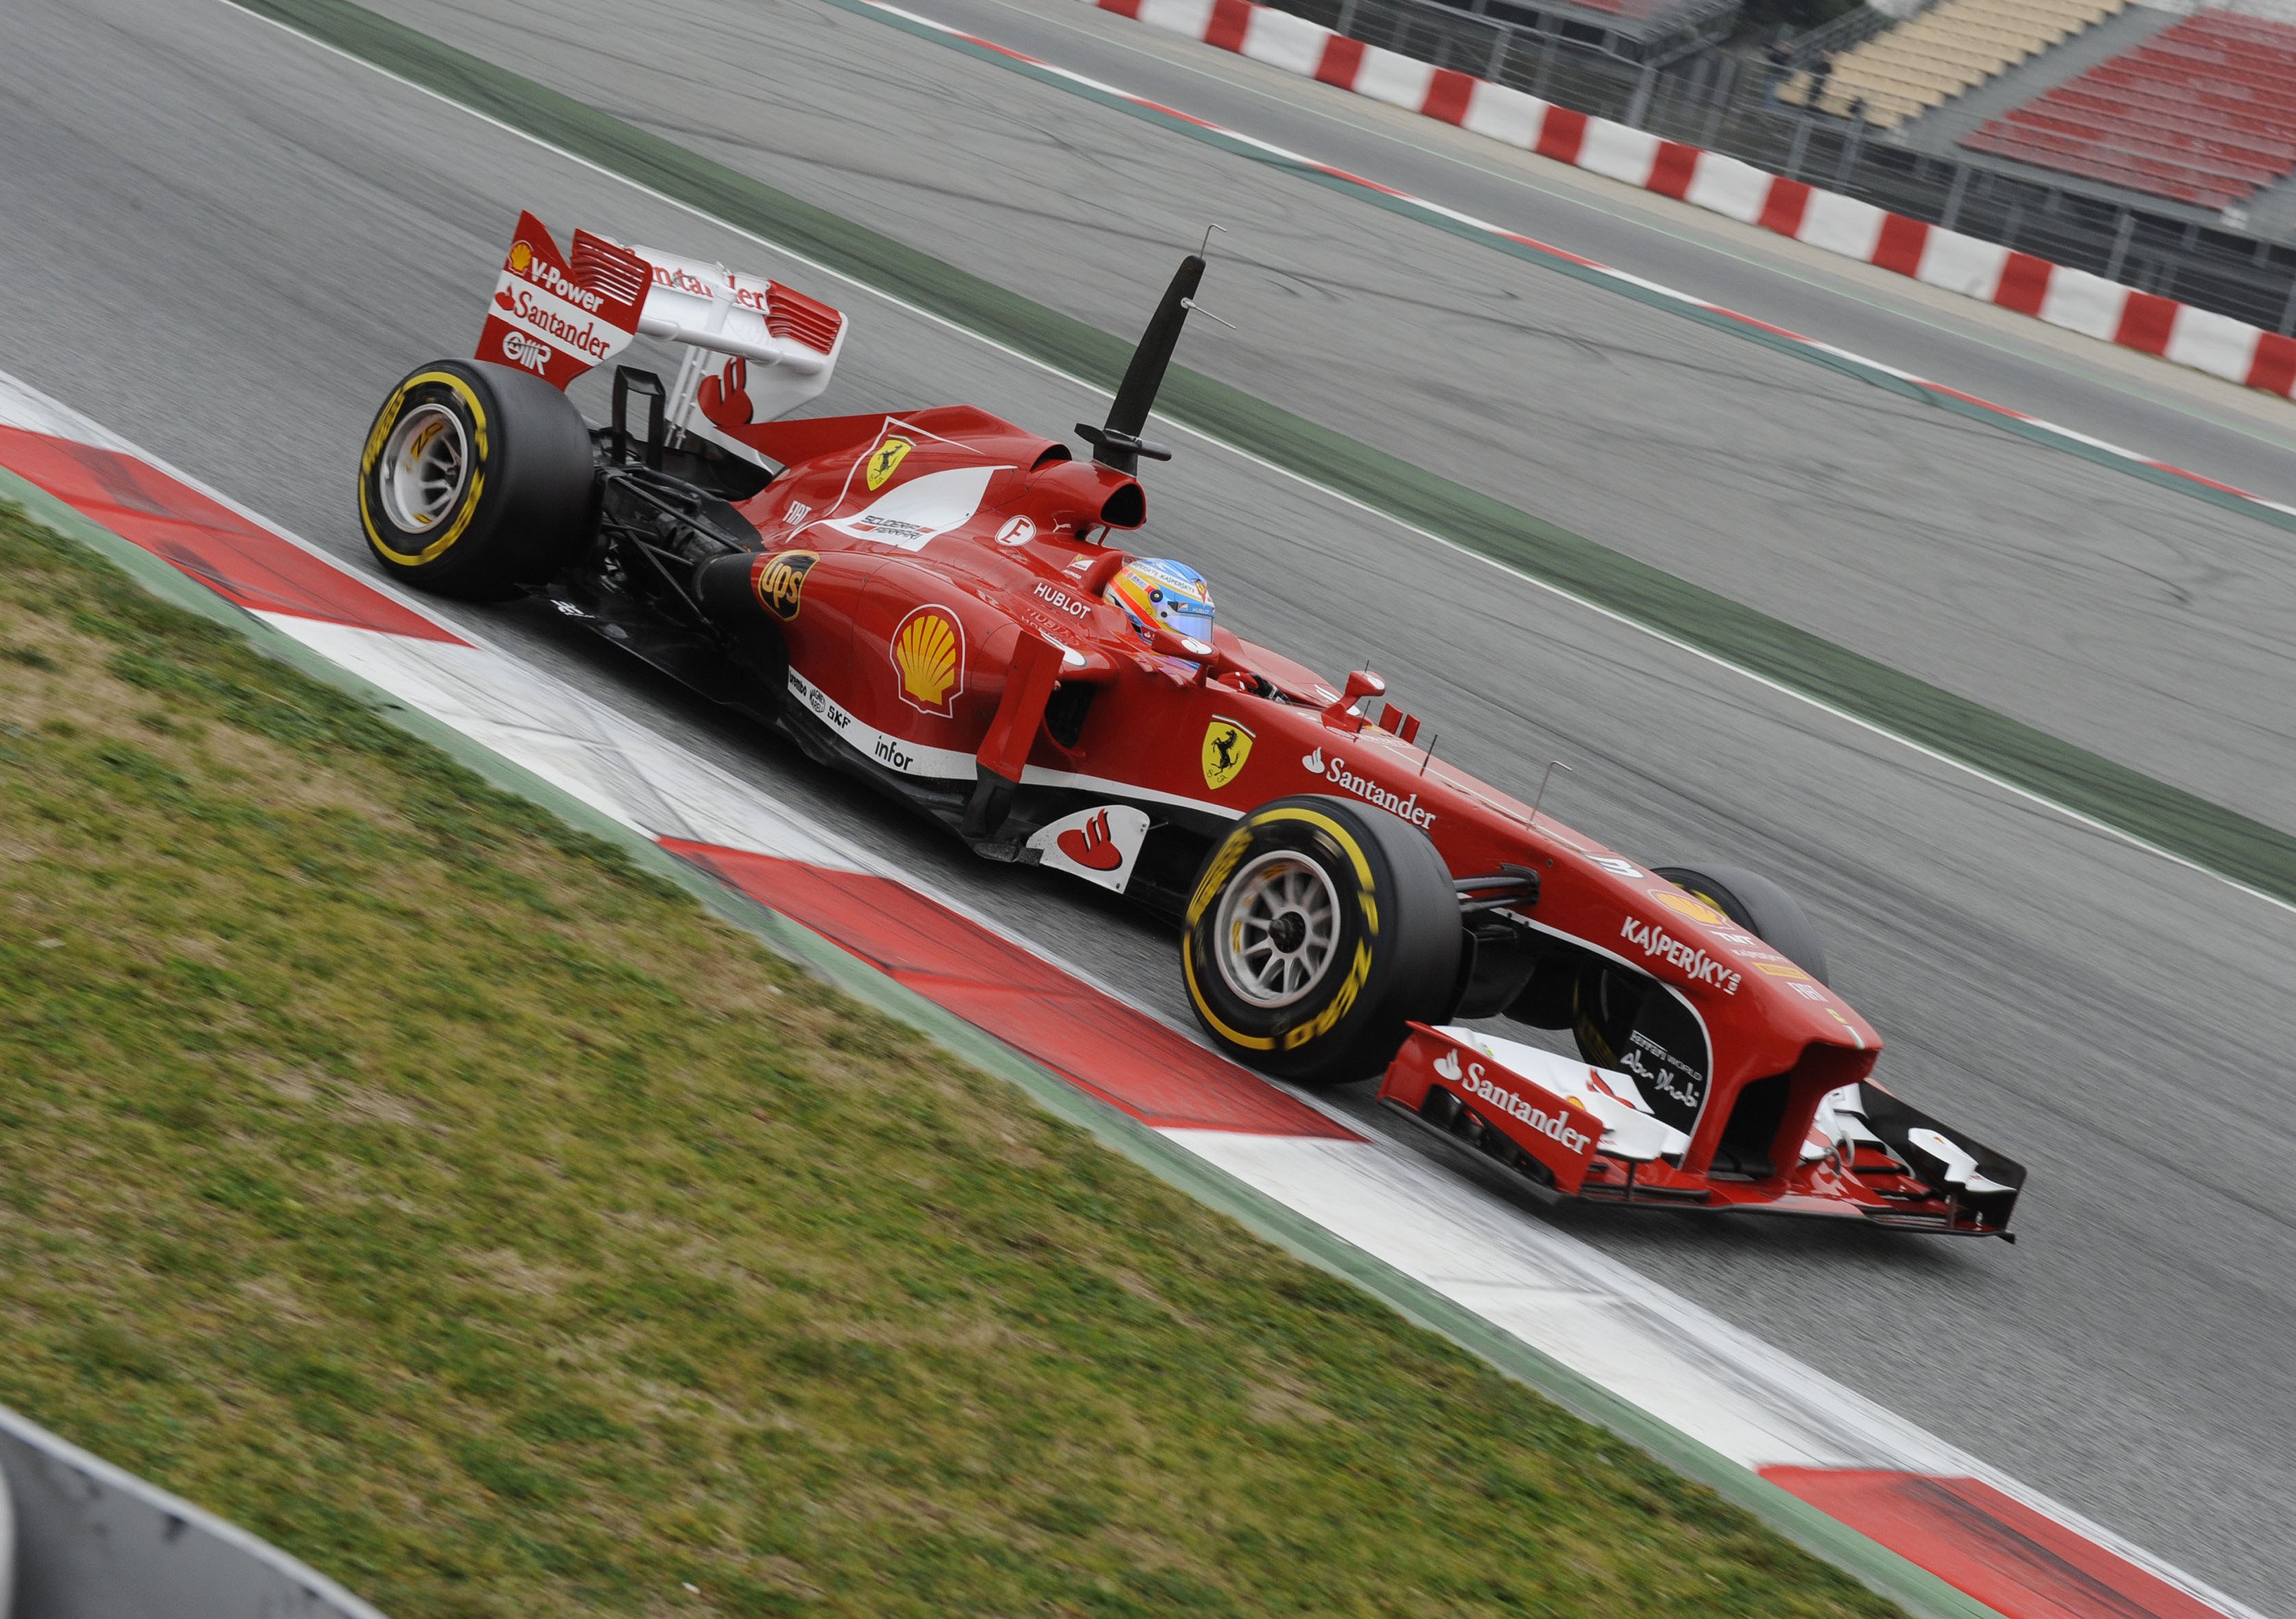 Formula 1: ce la far&agrave; la Ferrari a vincere il Mondiale 2013?